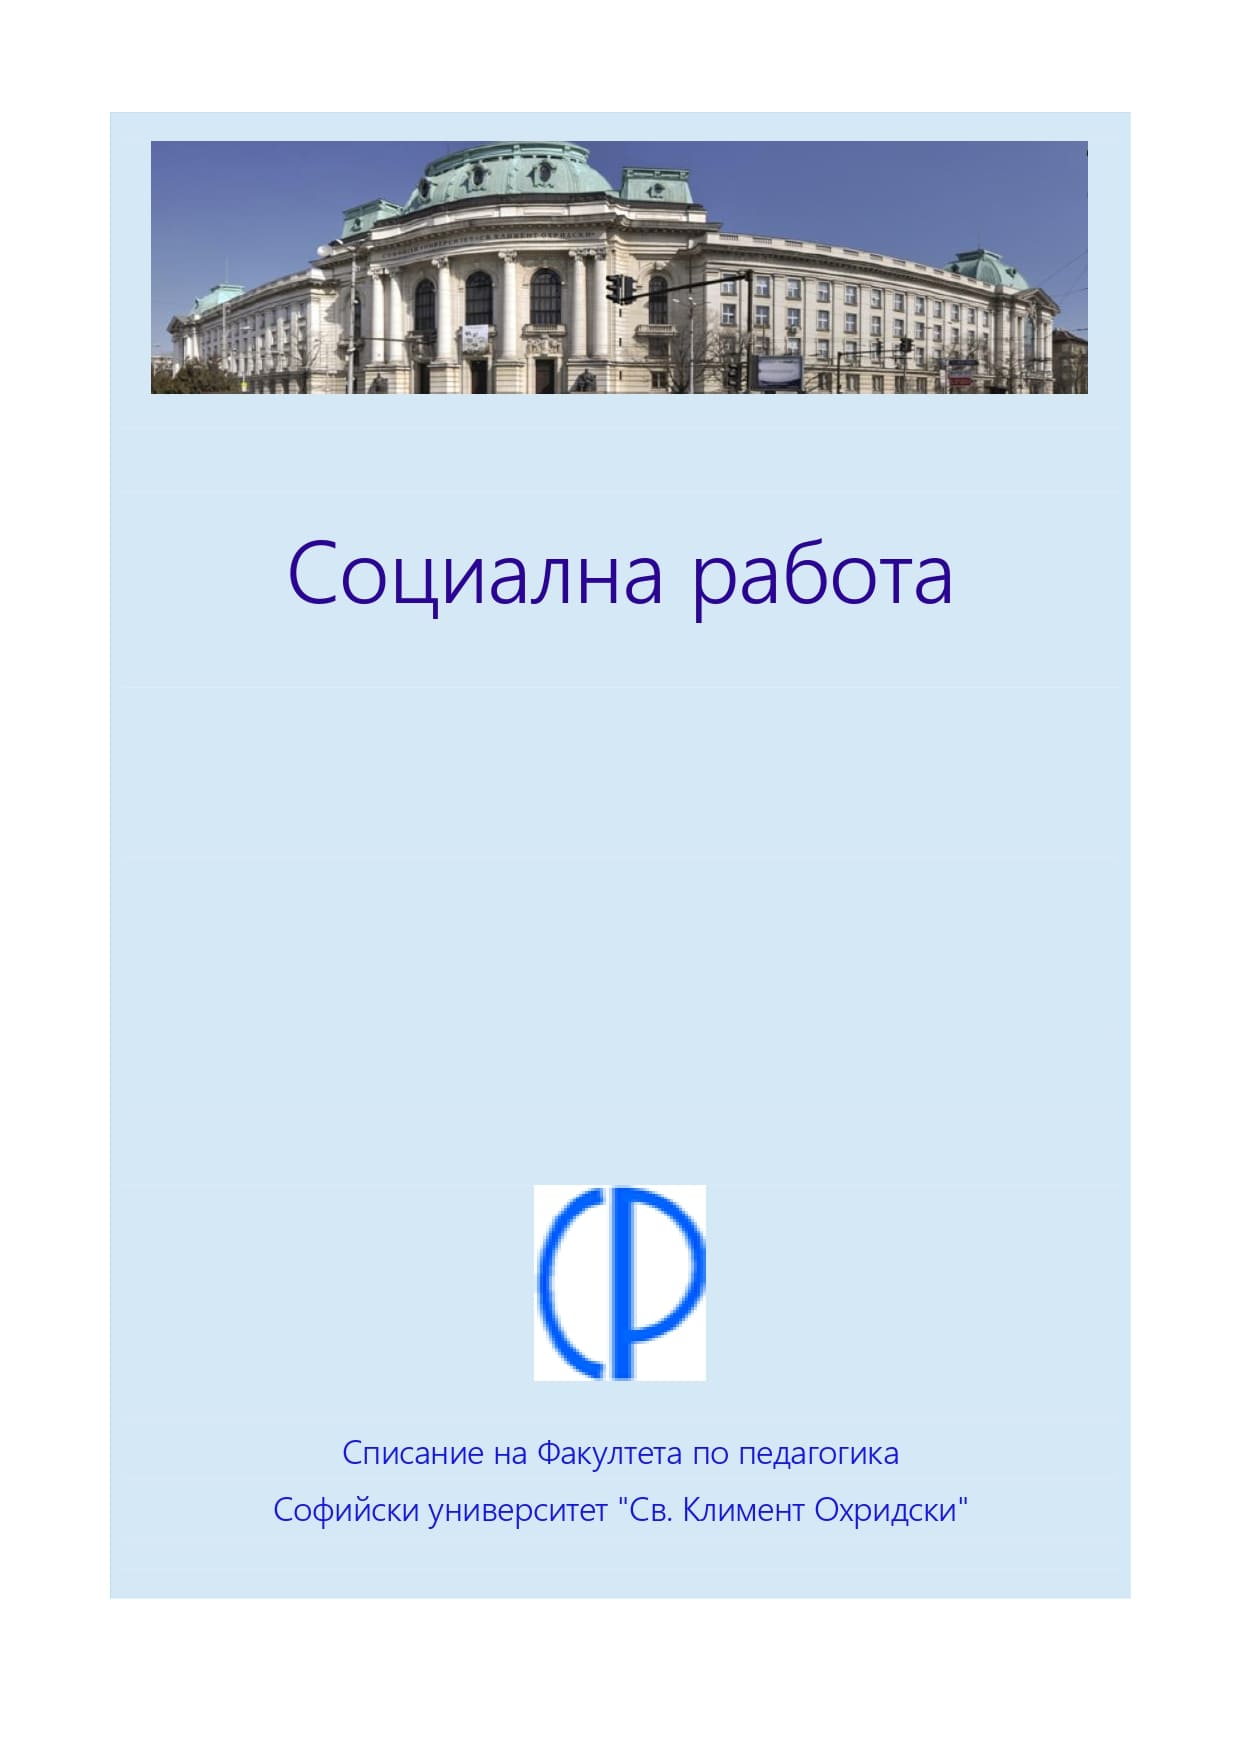 Социално-законодателни мерки и инициативи за справяне с безработицата в България (1944–1948)